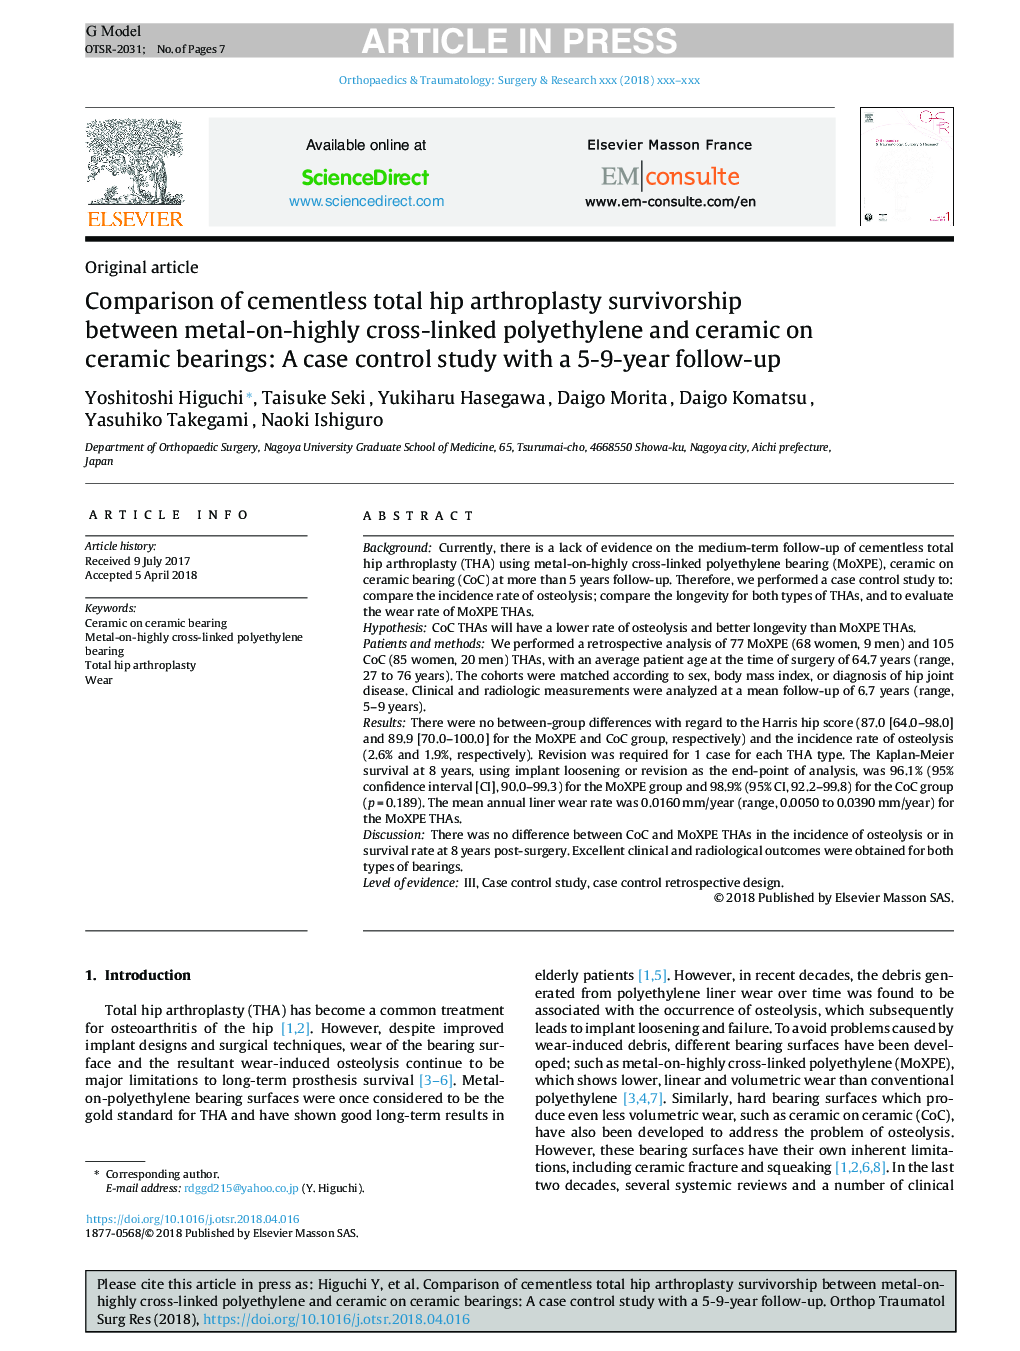 مقایسه میزان بازماندگی آرتروپلاستی هیپوفیز غیر طبیعی بین پلی اتیلن و سرامیک متالورژی بر روی بلبرینگ سرامیک: یک مطالعه مورد شاهدی با پیگیری 5-9 ساله